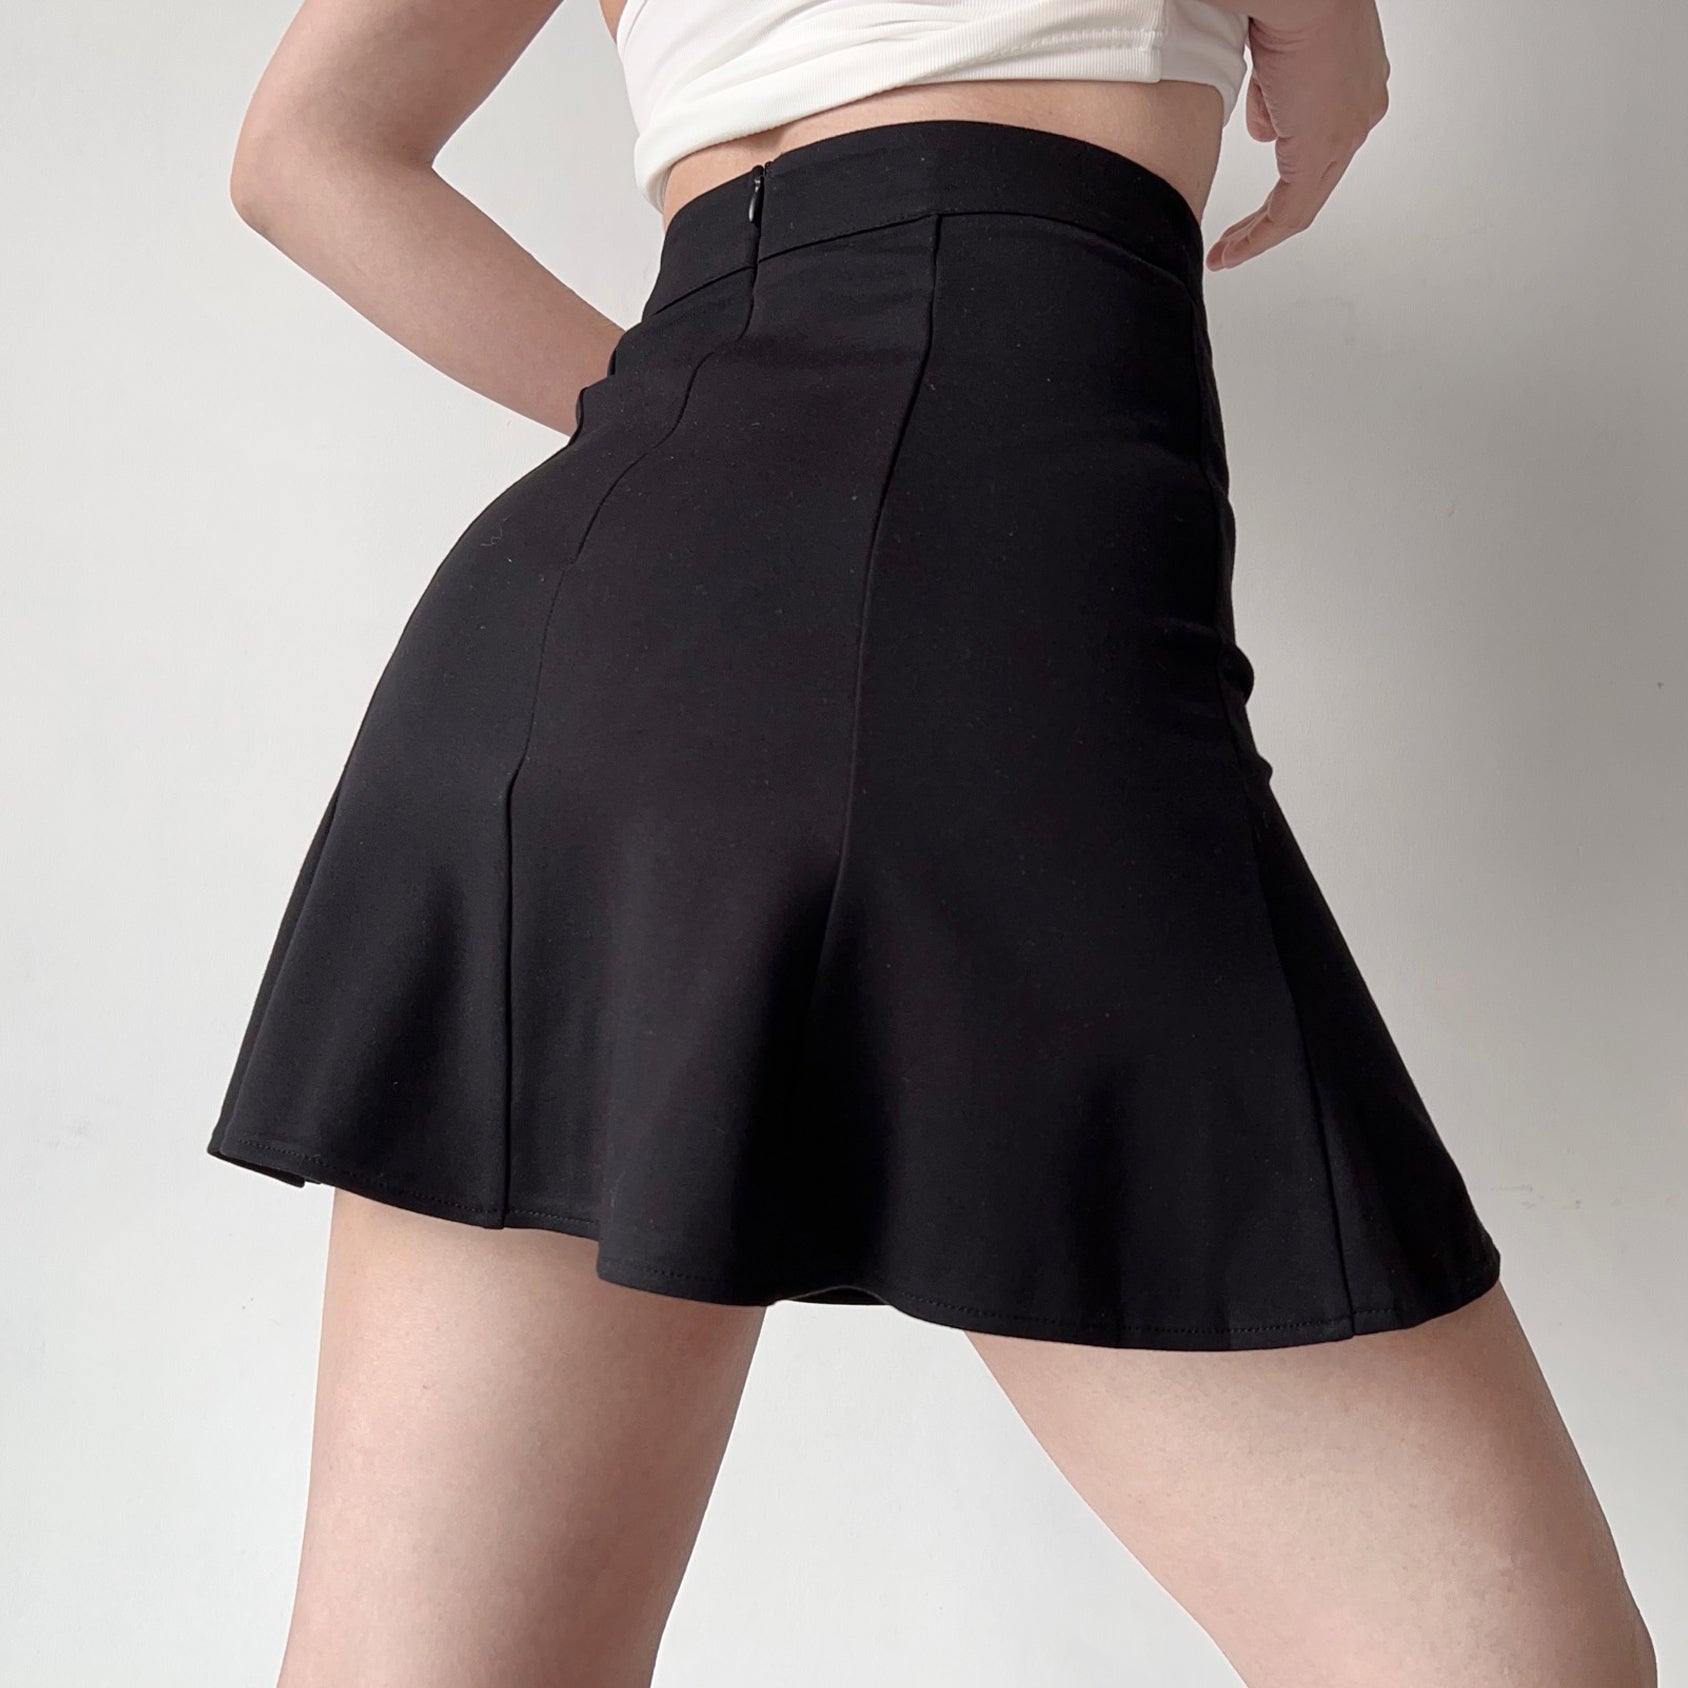 Wenkouban - New Moment High-Waisted Skirt